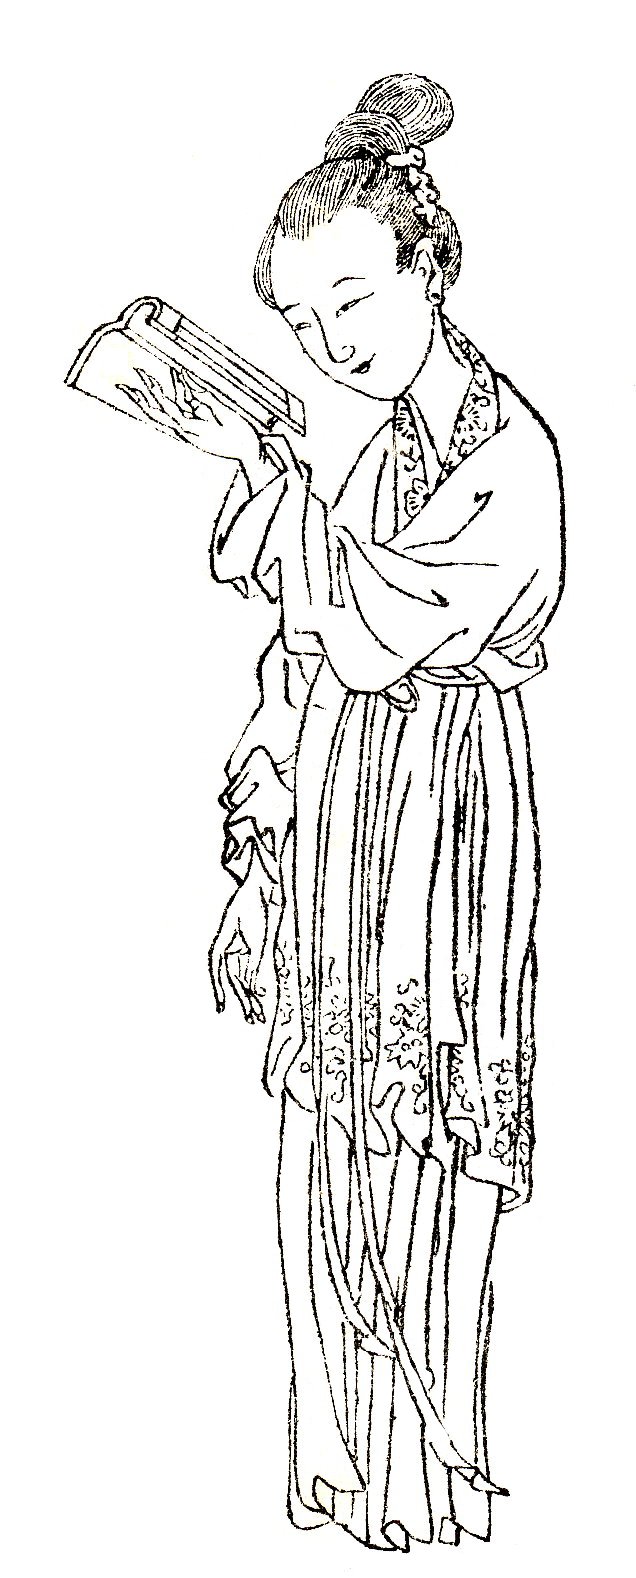 Image de Ban Zhao par Shangguan Zhou (上官周, b. 1665)